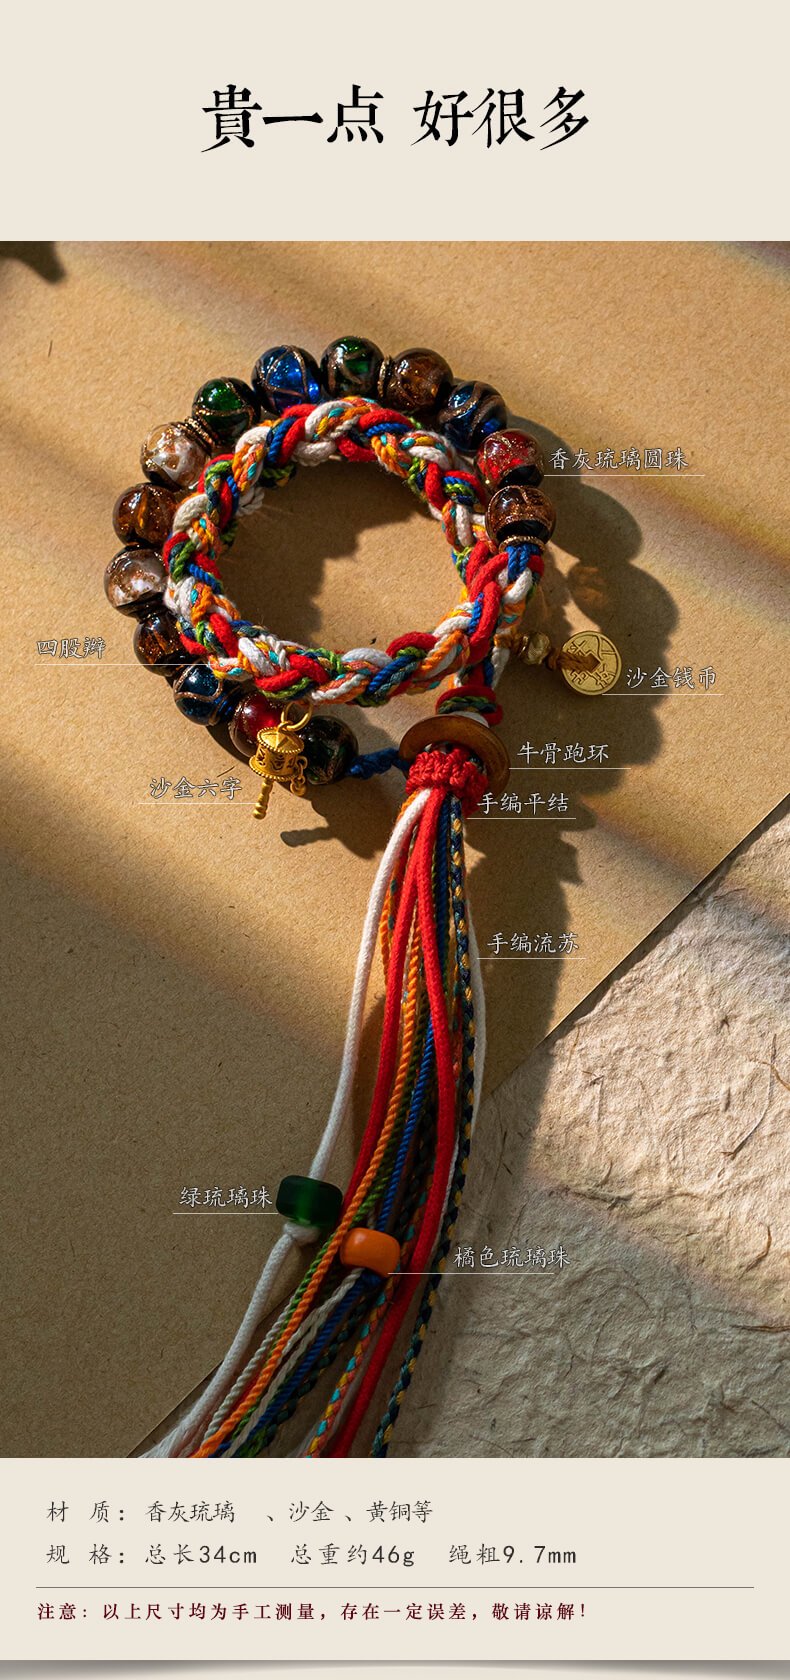 《香灰琉璃》手搓棉繩民族風藏式手繩